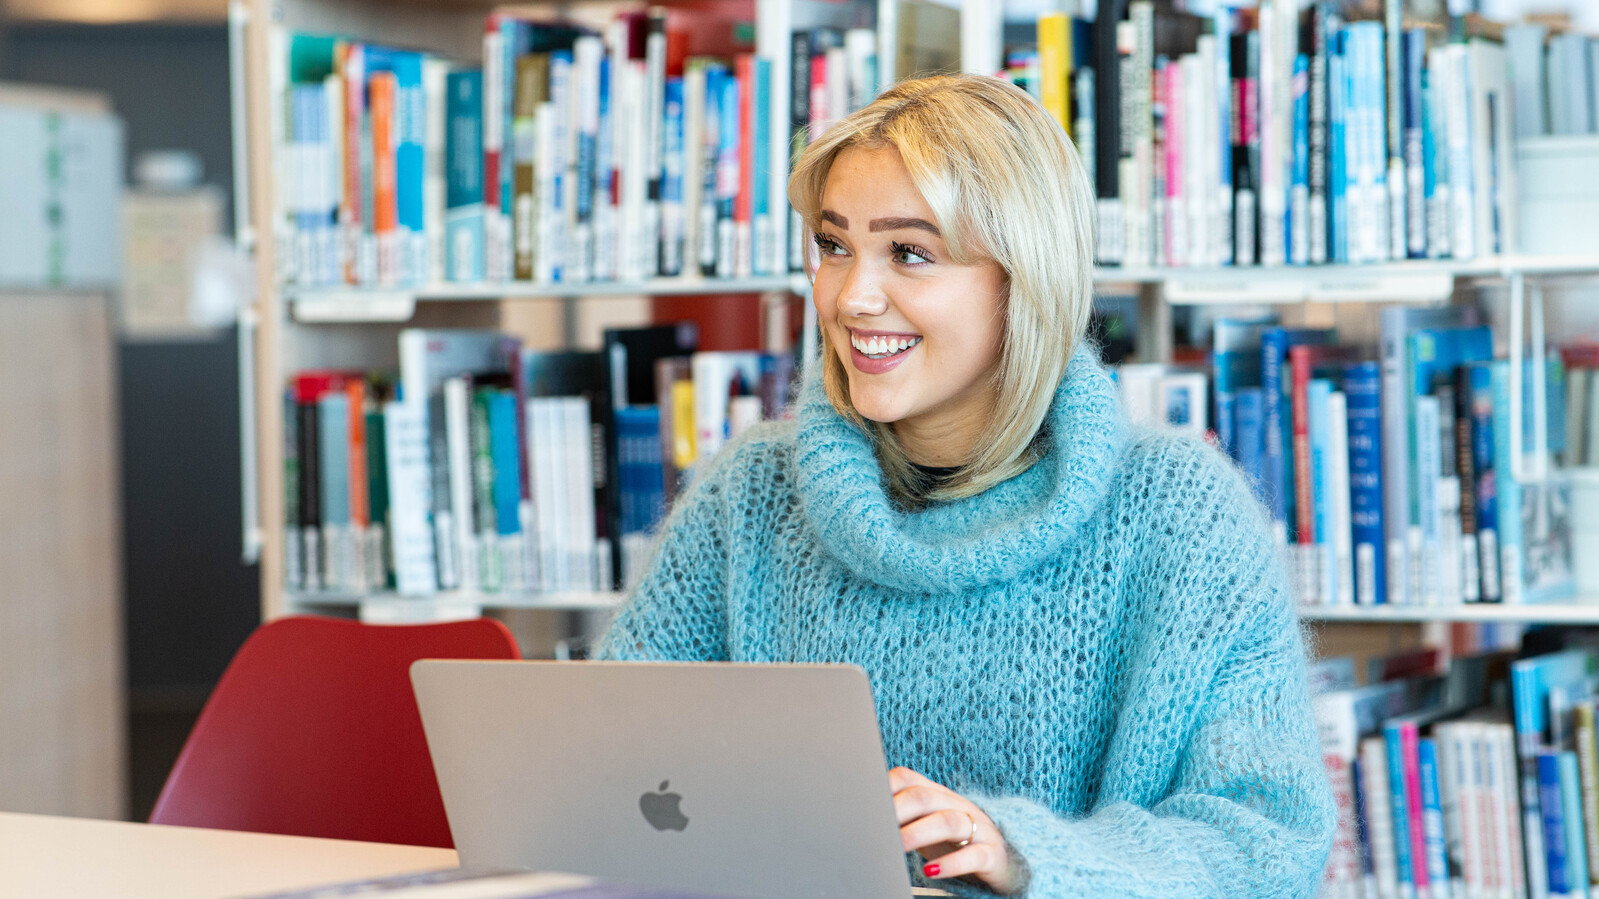 Kvinnelig student med lyst hår og turkis trikket genser sitter med sin macbook fremfor seg på et bord, på et bibliotek. Smiler og ser fornøyd ut.